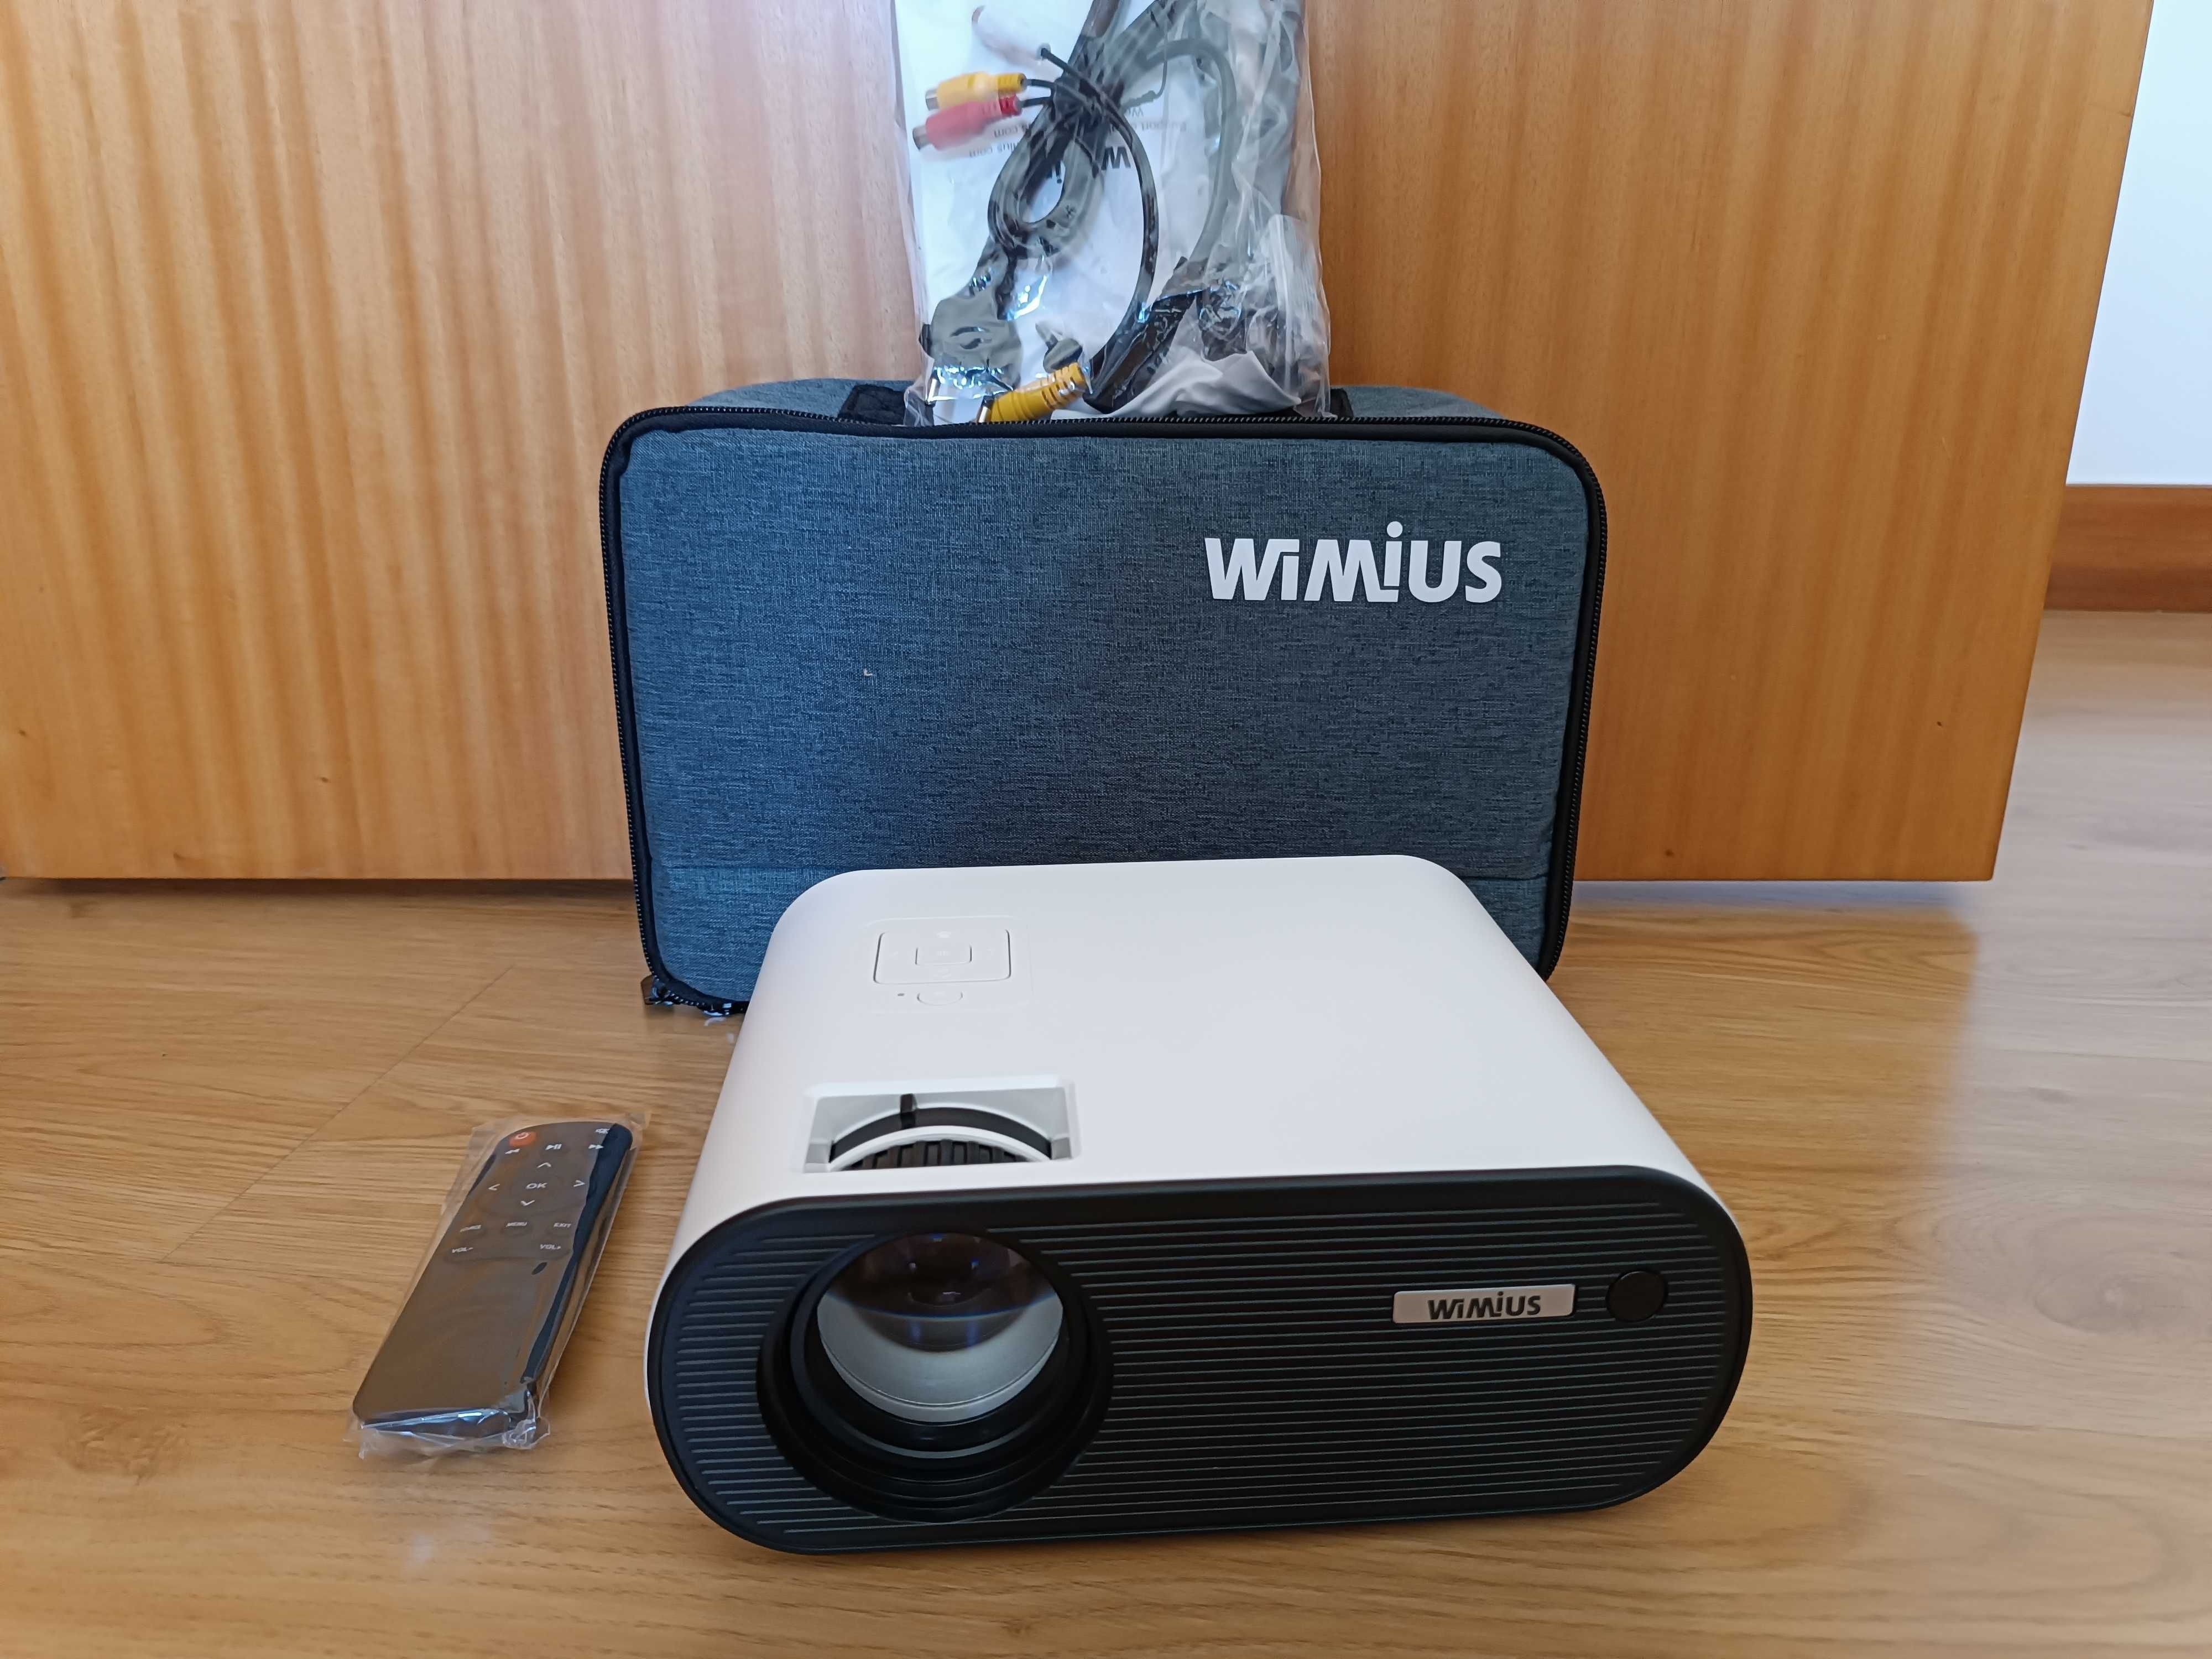 Projetor WiMiUS / WiFi Mirroring / 7000 Lumens / 1080p / Bolsa (NOVO)